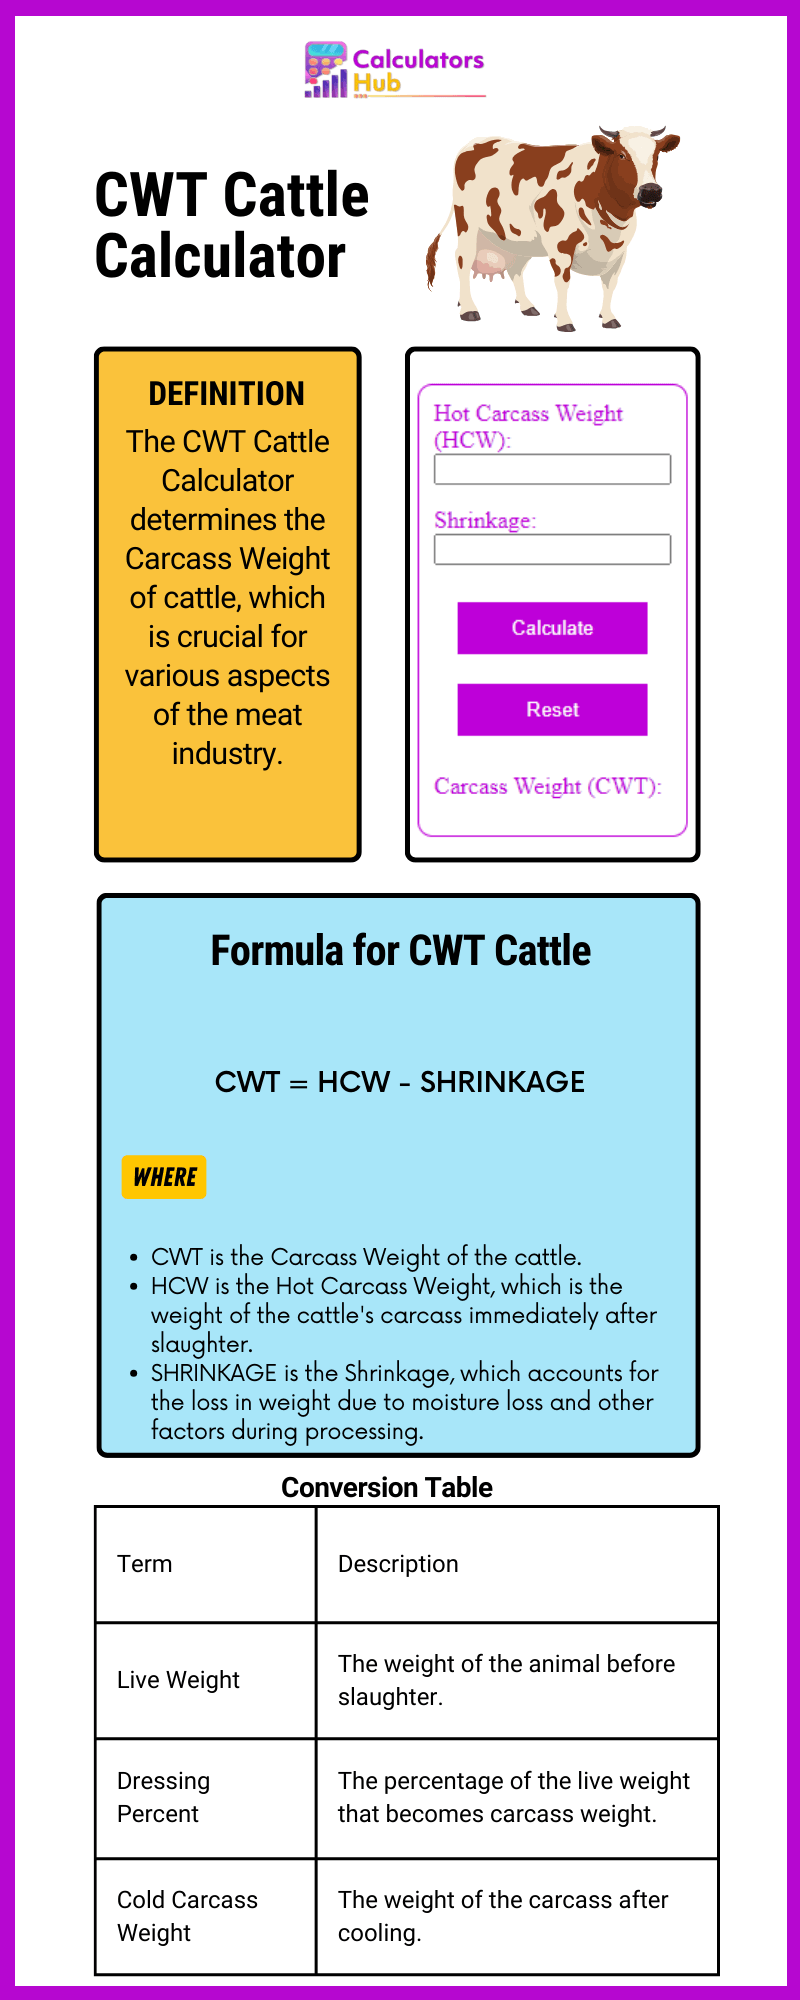 CWT 牛计算器